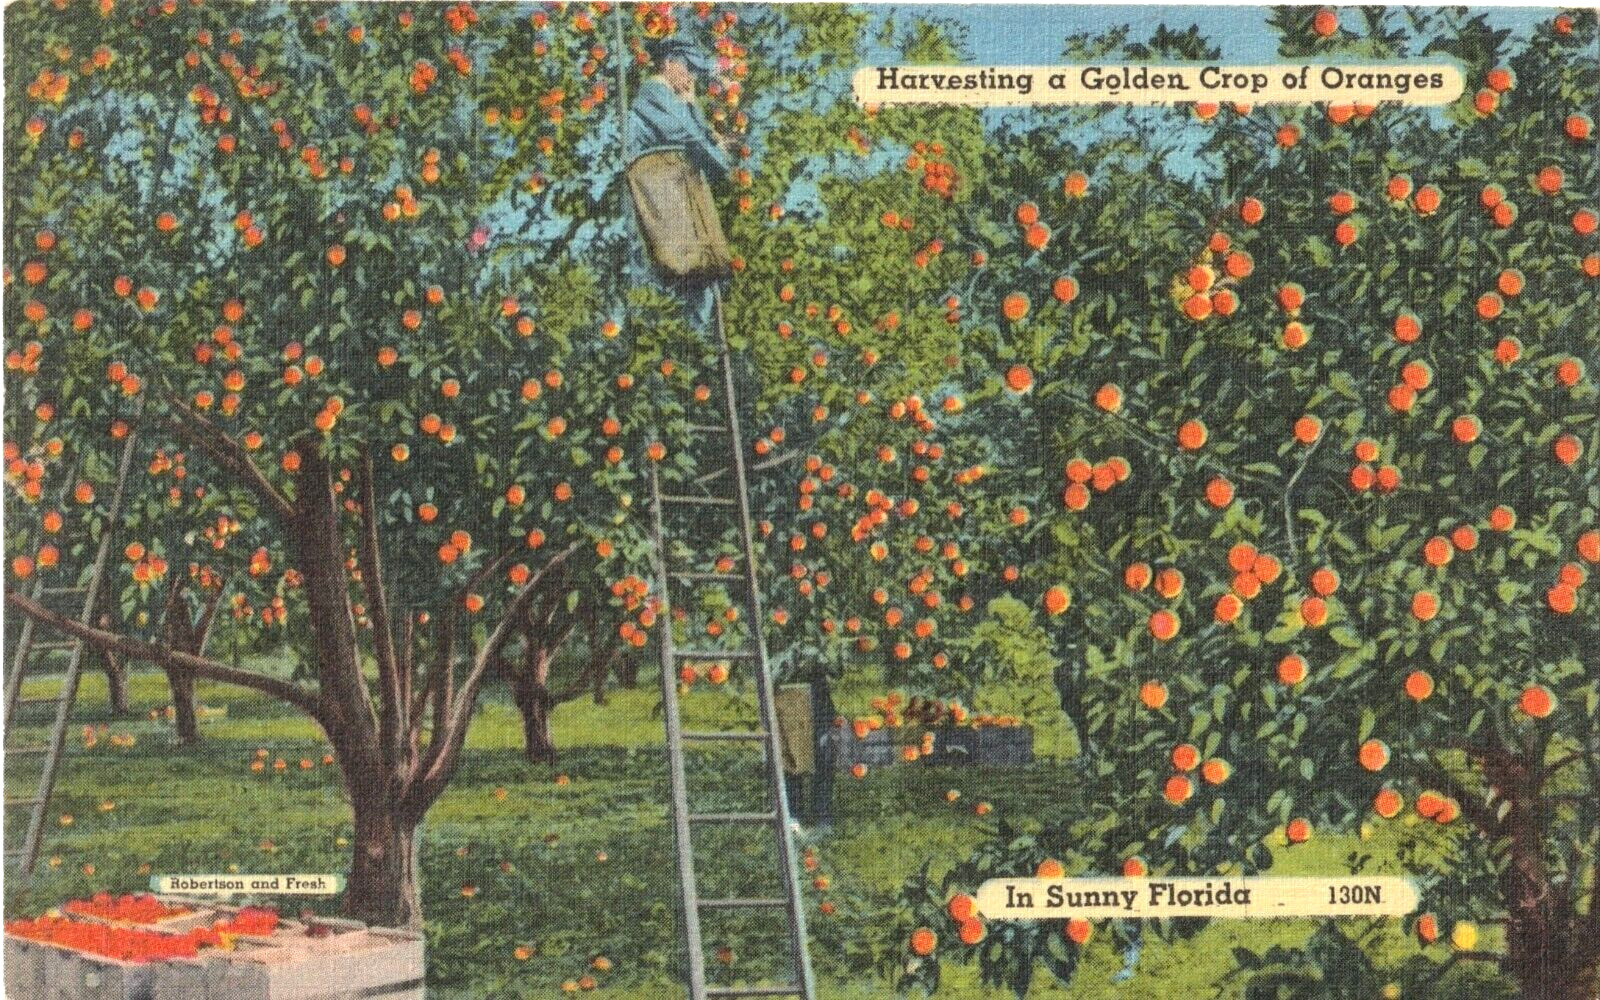 Harvesting a Golden Crop of Oranges-Sunny Florida FL-unposted vintage